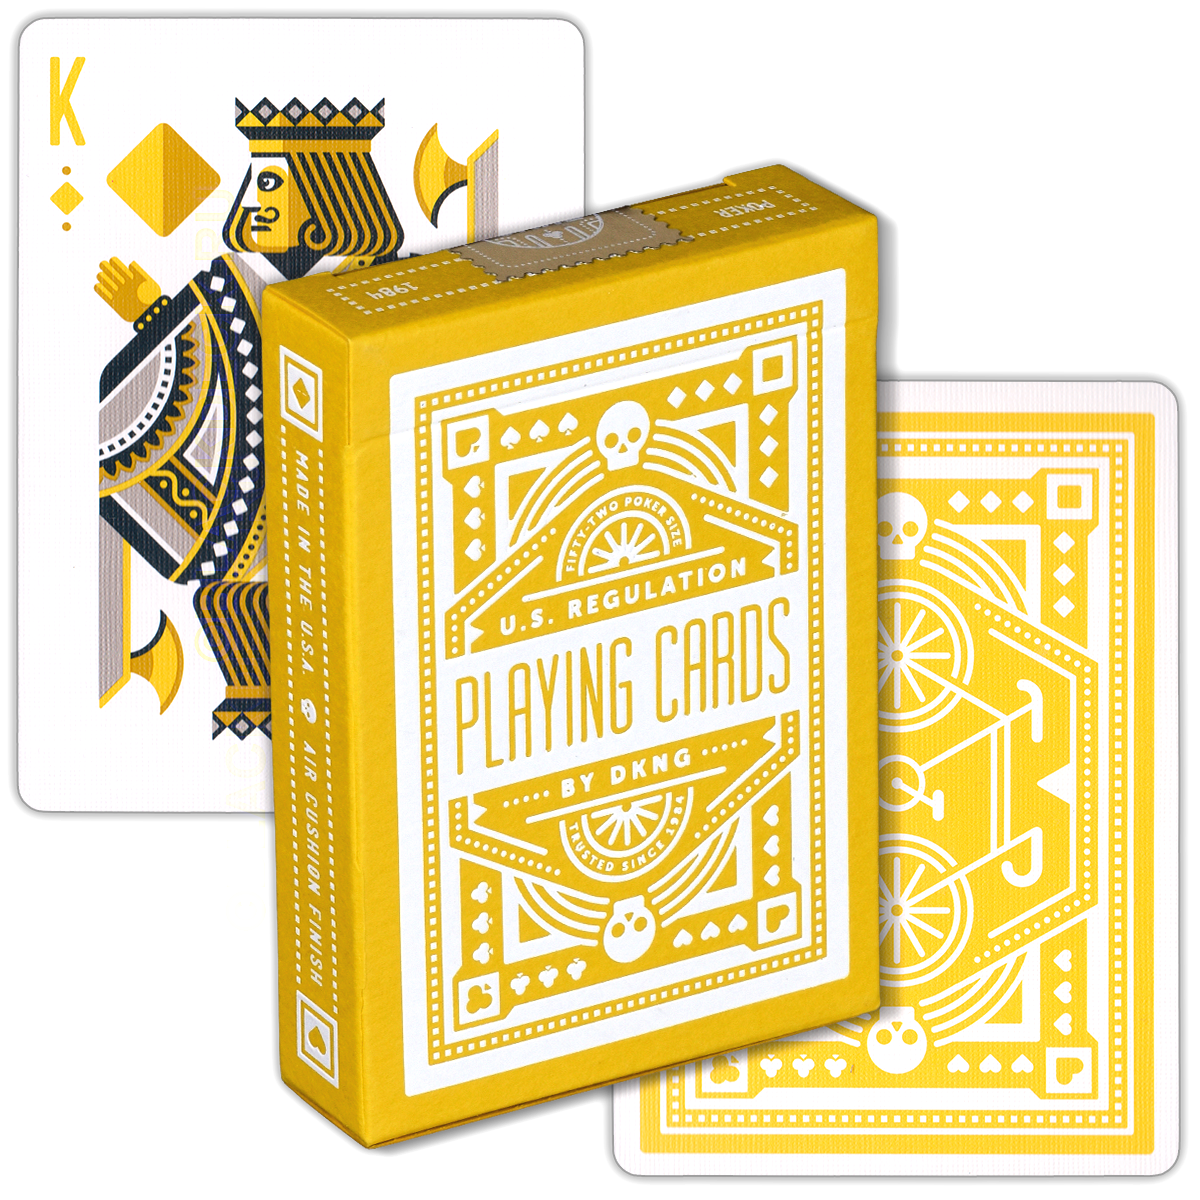 DKNG Yellow Wheel, коллекционные игральные карты Art Of Play